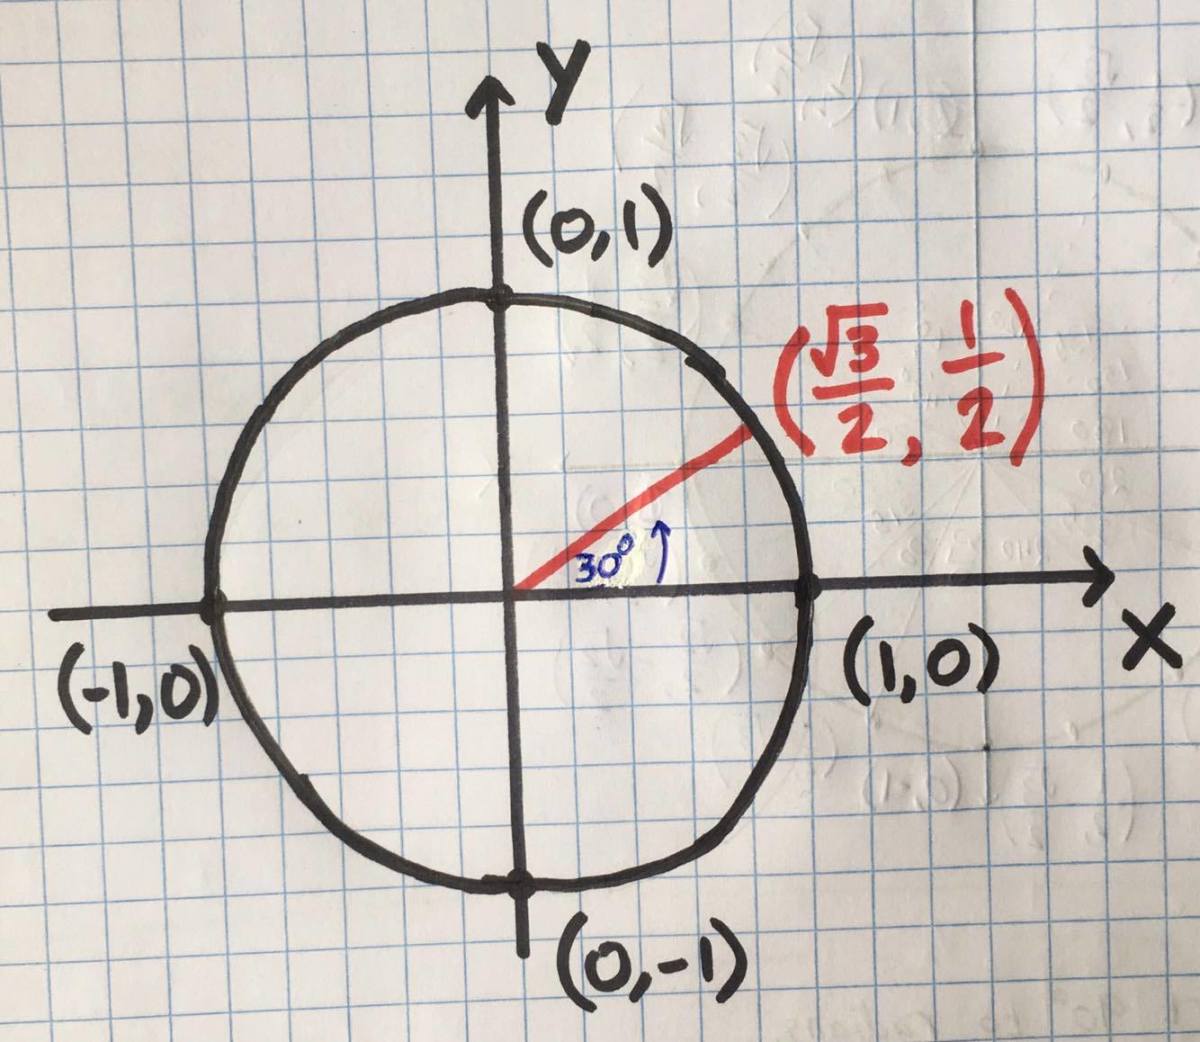 Trigonometry: The Unit Circle [in Plain English]